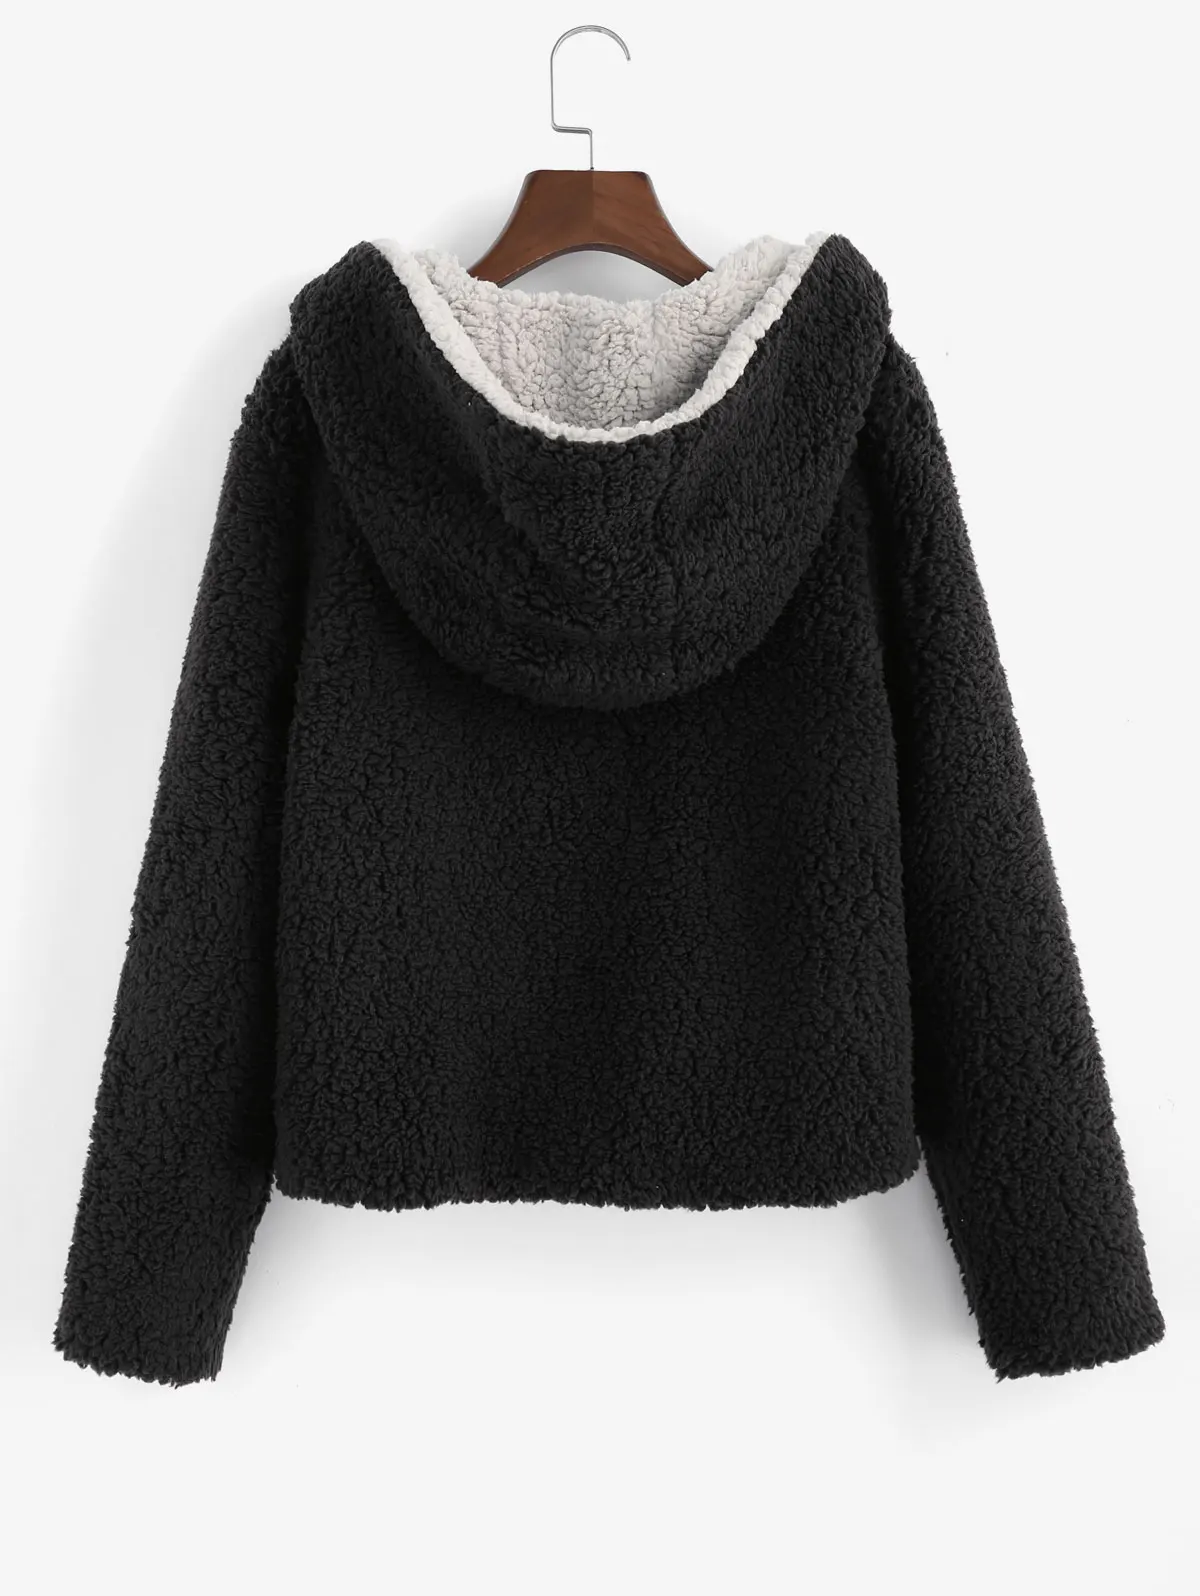 ZAFUL X Alexis Ricecakes двустороннее плюшевое пальто с капюшоном с открытой передней частью плюшевое пальто для женщин Милое с широкой талией милое с капюшоном зима